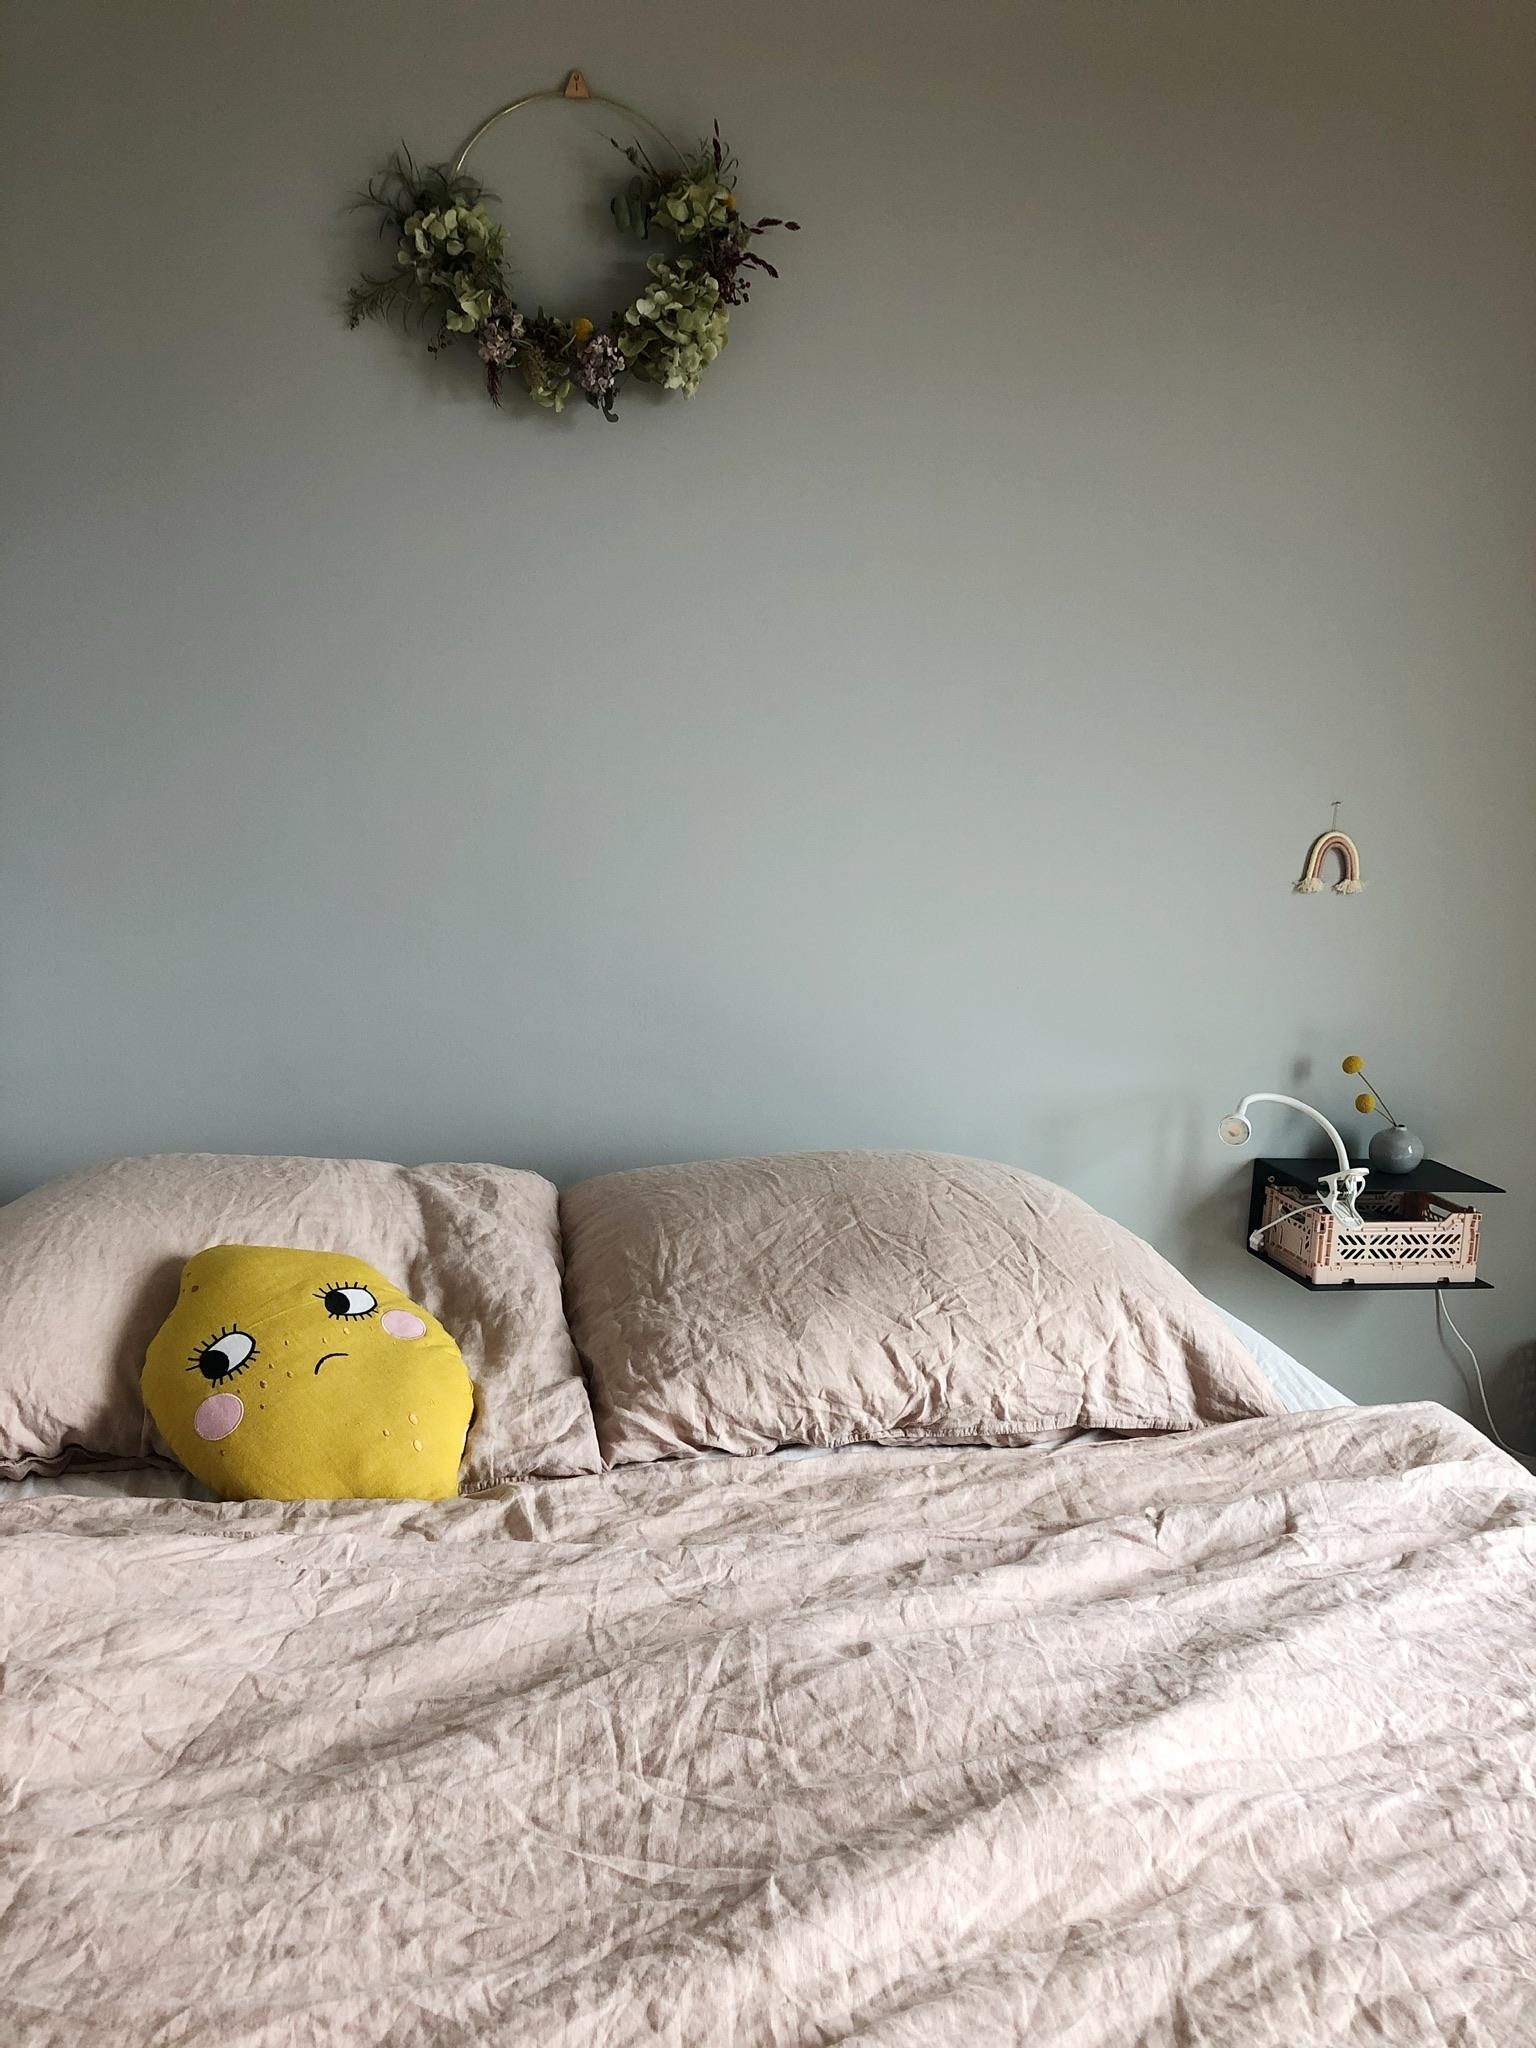 Auch das Schlafzimmer hat eine Schwäche für Zitronen 🍋 Ansonsten schmiegt es sich in sanfte Farben zum Träumen.